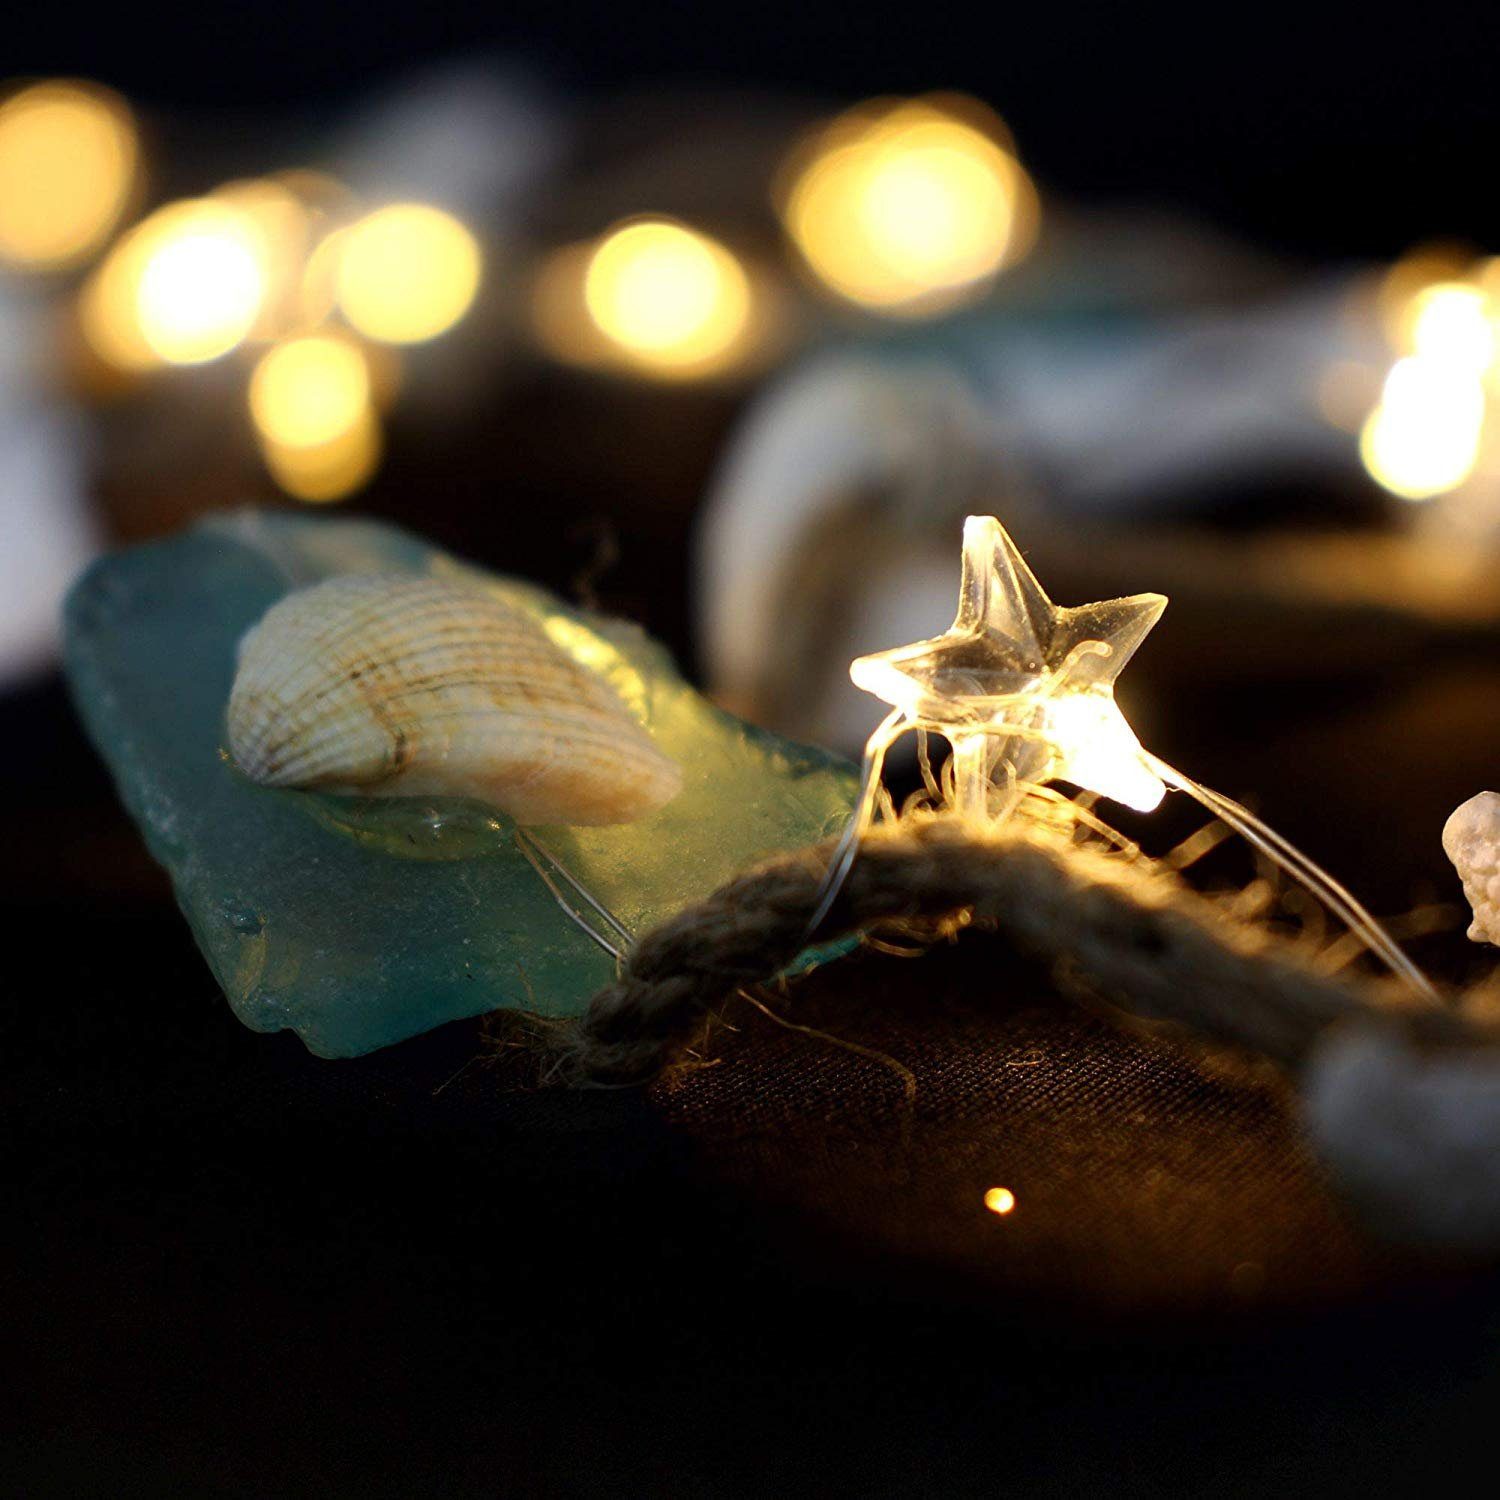 Seesternen, 20-flammig, mit Dekoleidenschaft Muscheln dekoriert LED-Lichterkette warmweiß und leuchtende 20 "Ocean" LEDs